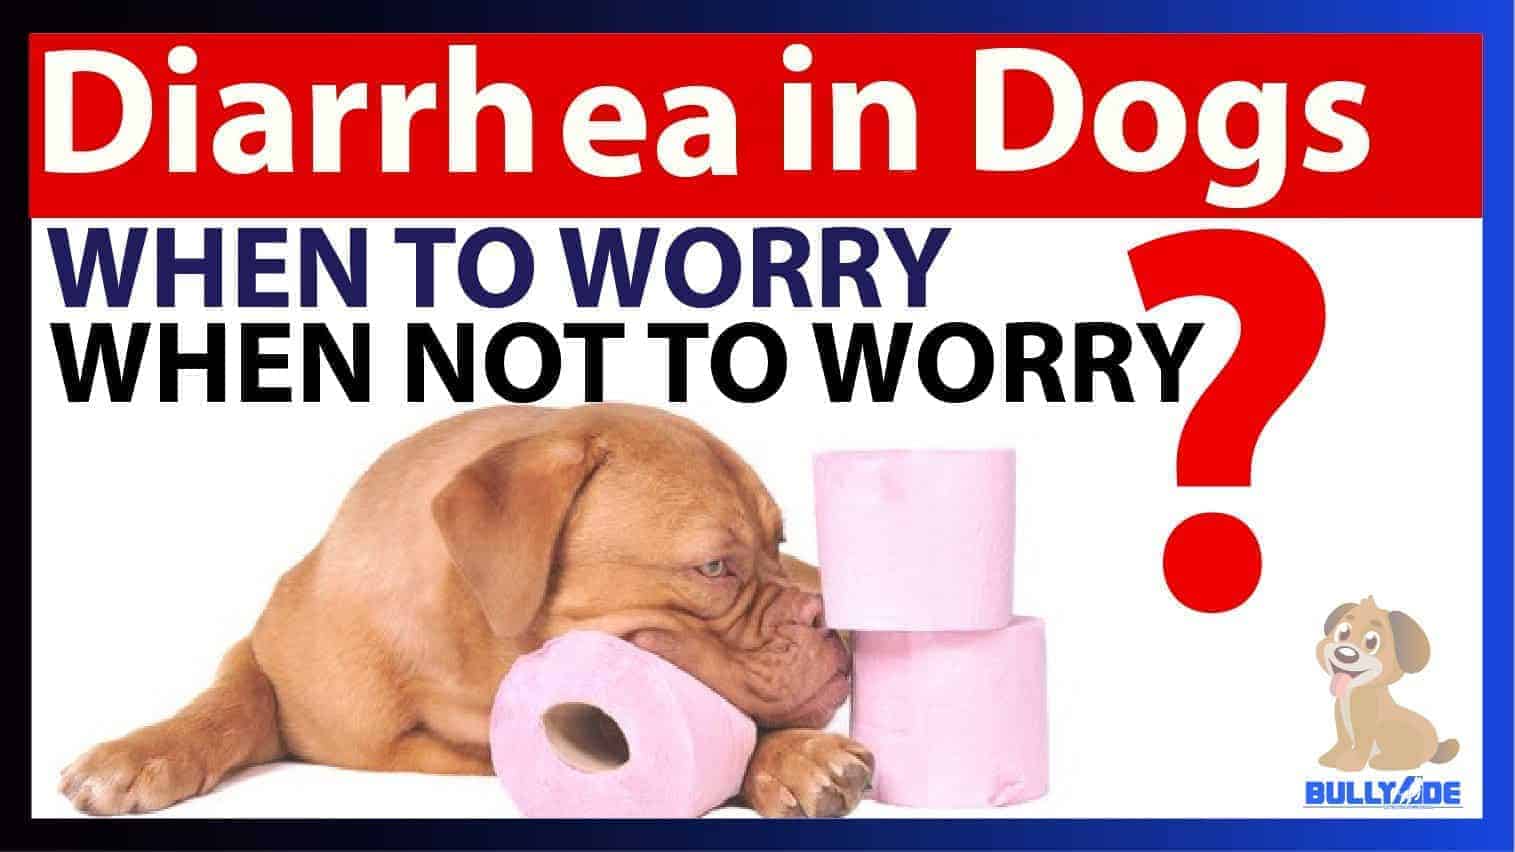 Dog Diarrhea Treatment with Bullyade Hydration